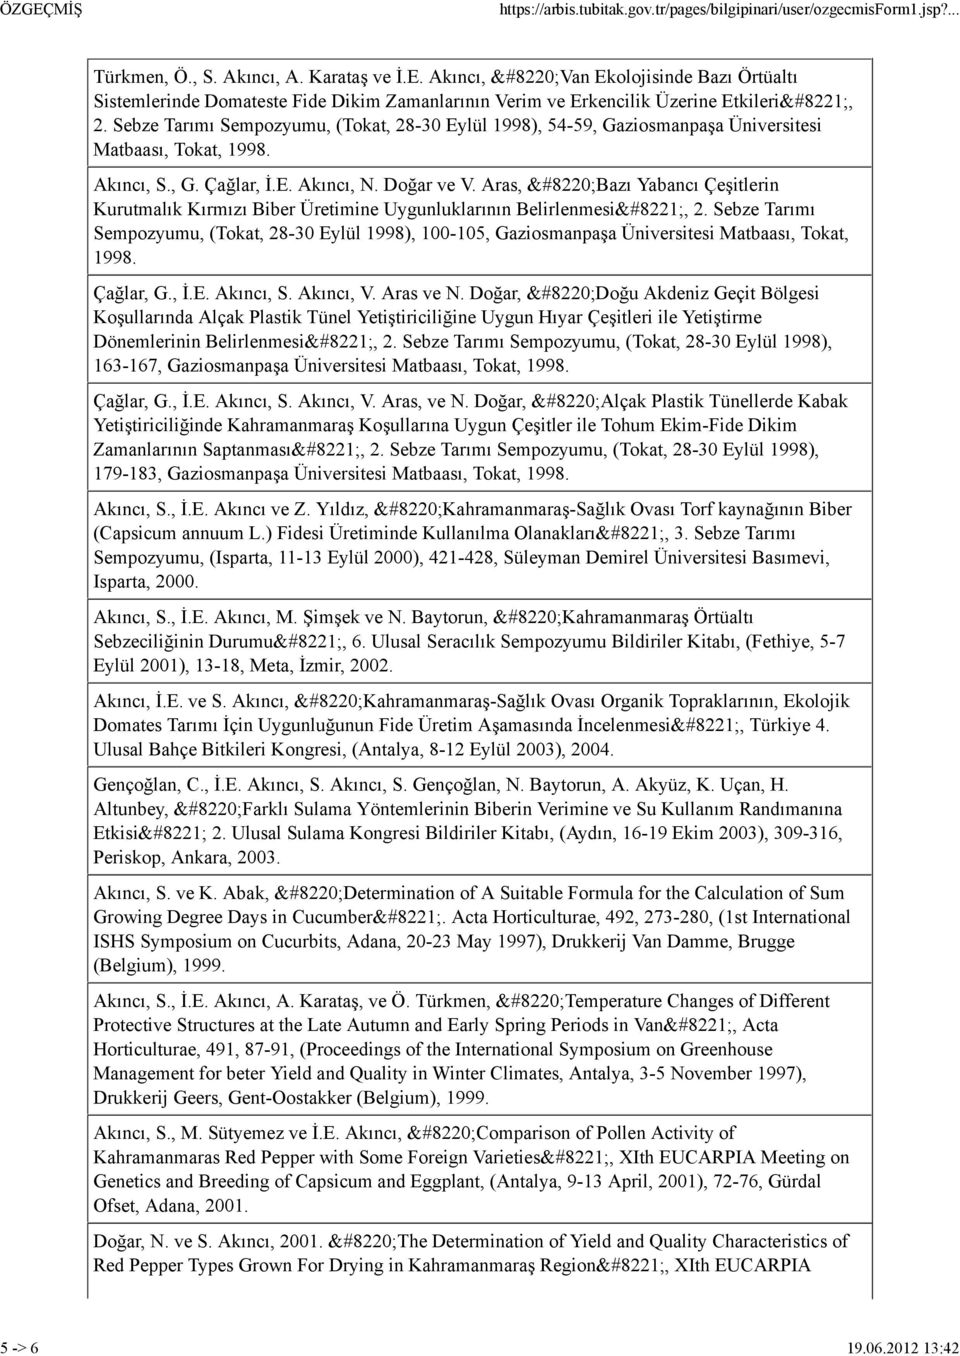 Aras, Bazı Yabancı Çeşitlerin Kurutmalık Kırmızı Biber Üretimine Uygunluklarının Belirlenmesi, 2. Sebze Tarımı Sempozyumu, (Tokat, 28-30 Eylül 1998), 100-105, Gaziosmanpaşa Matbaası, Tokat, 1998.